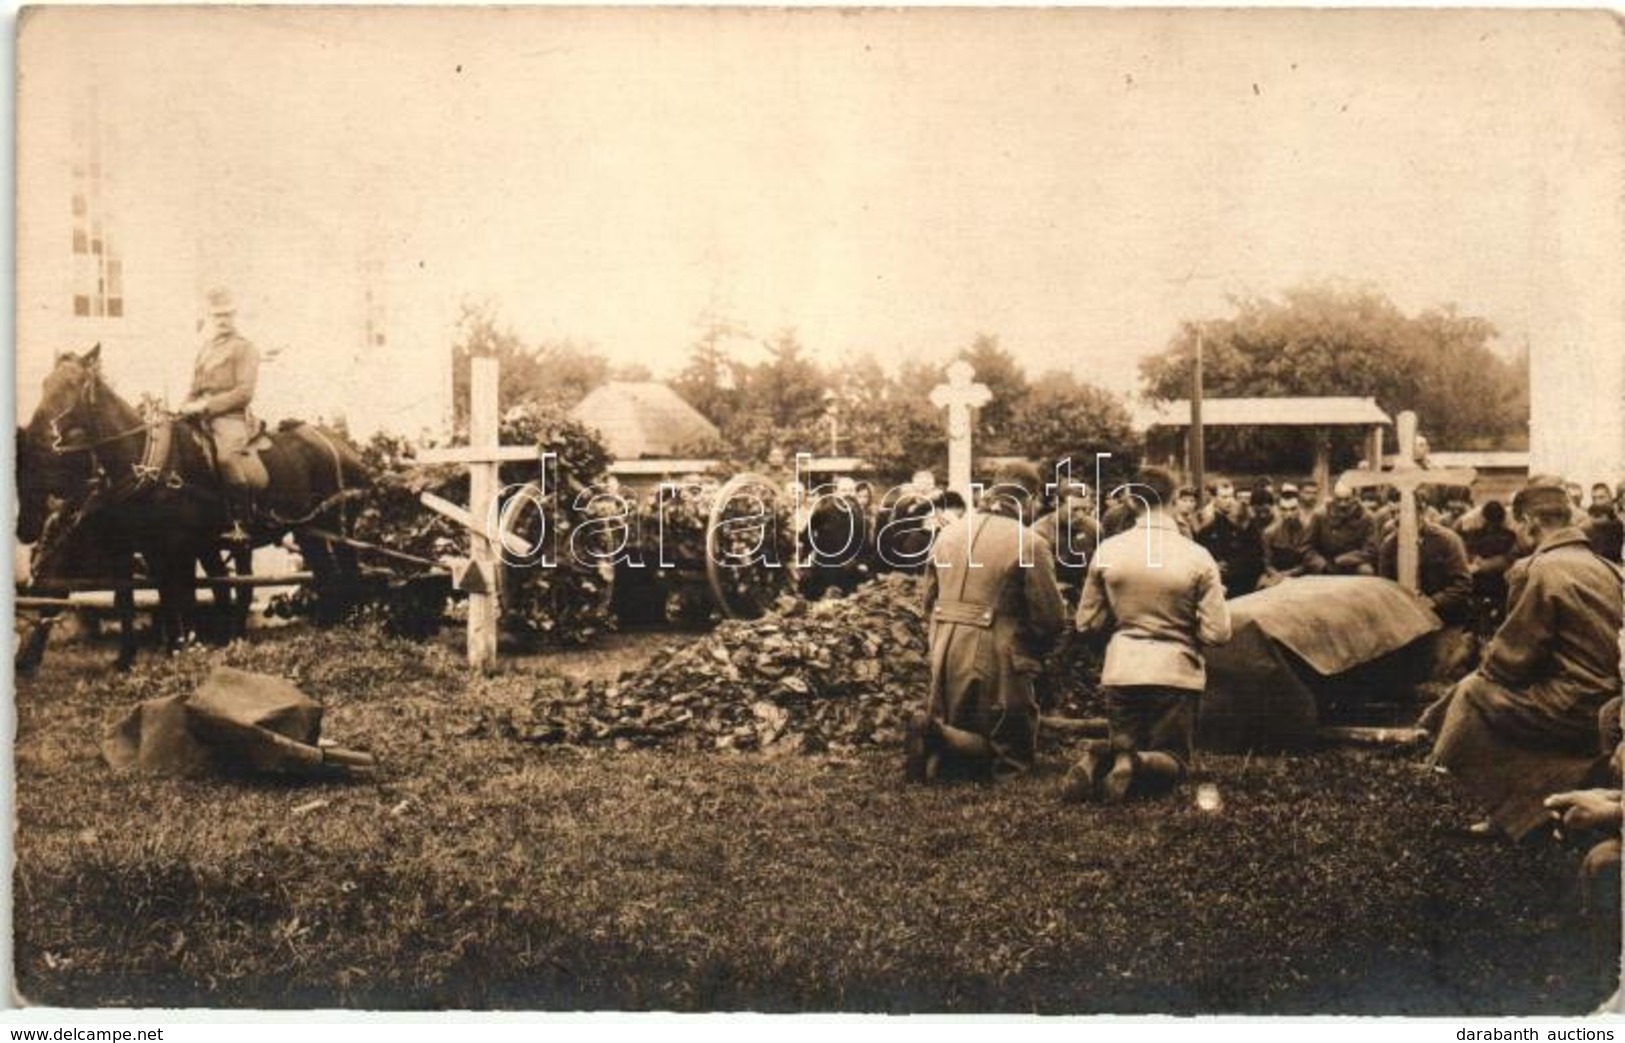 ** T2 Katonai Temetés, Halottszállító Lovaskocsi, Gyászoló Katonák / WWI Austro-Hungarian K.u.K. Military Funeral In The - Non Classés